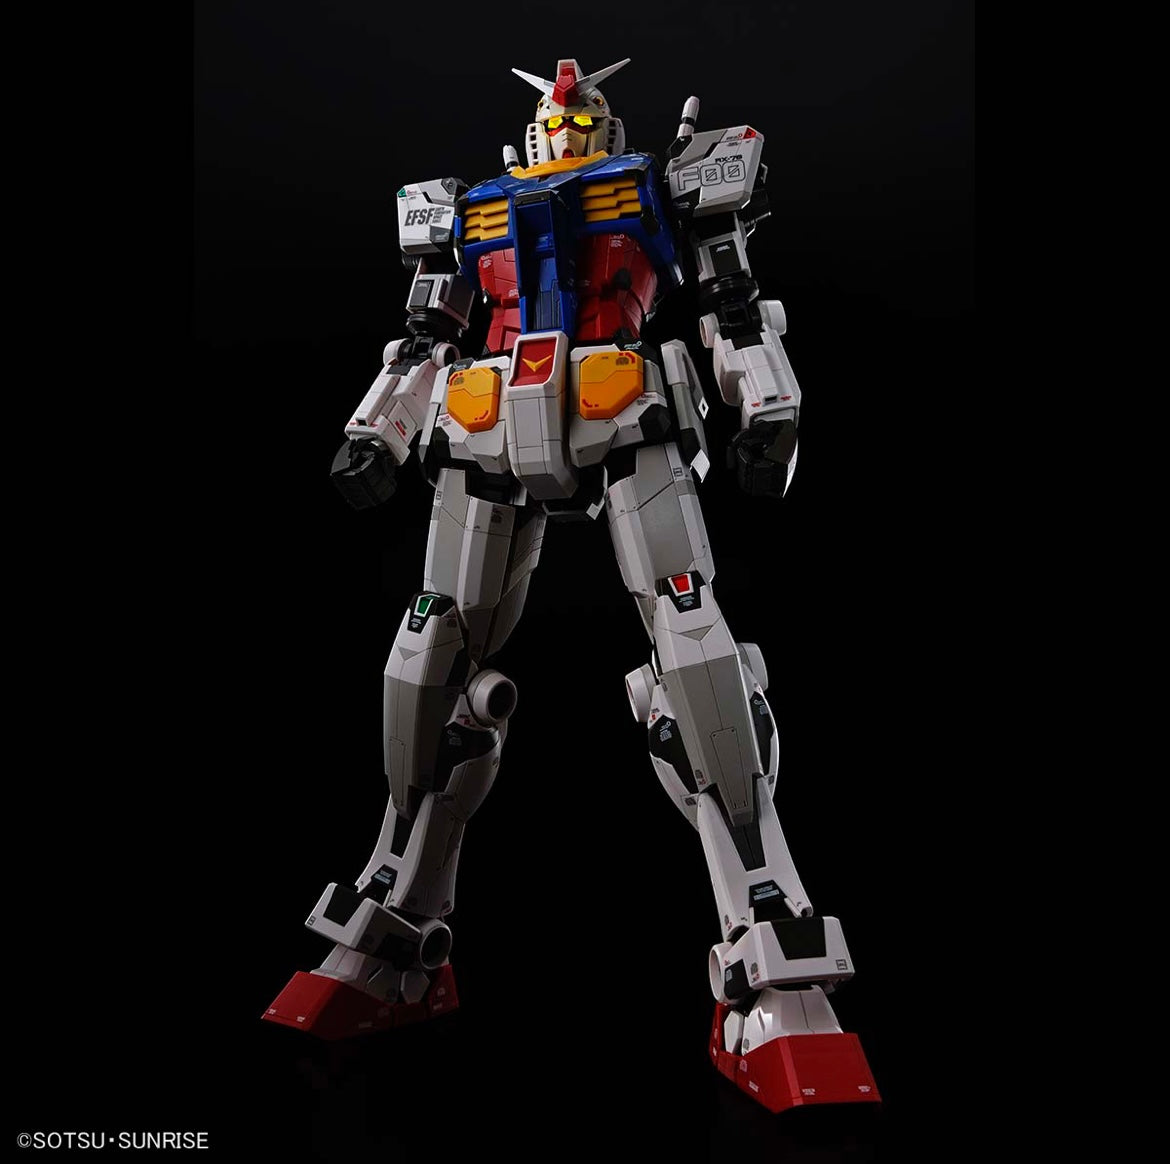 1/48 RX-78F00 Gundam (June & July Ship Date)